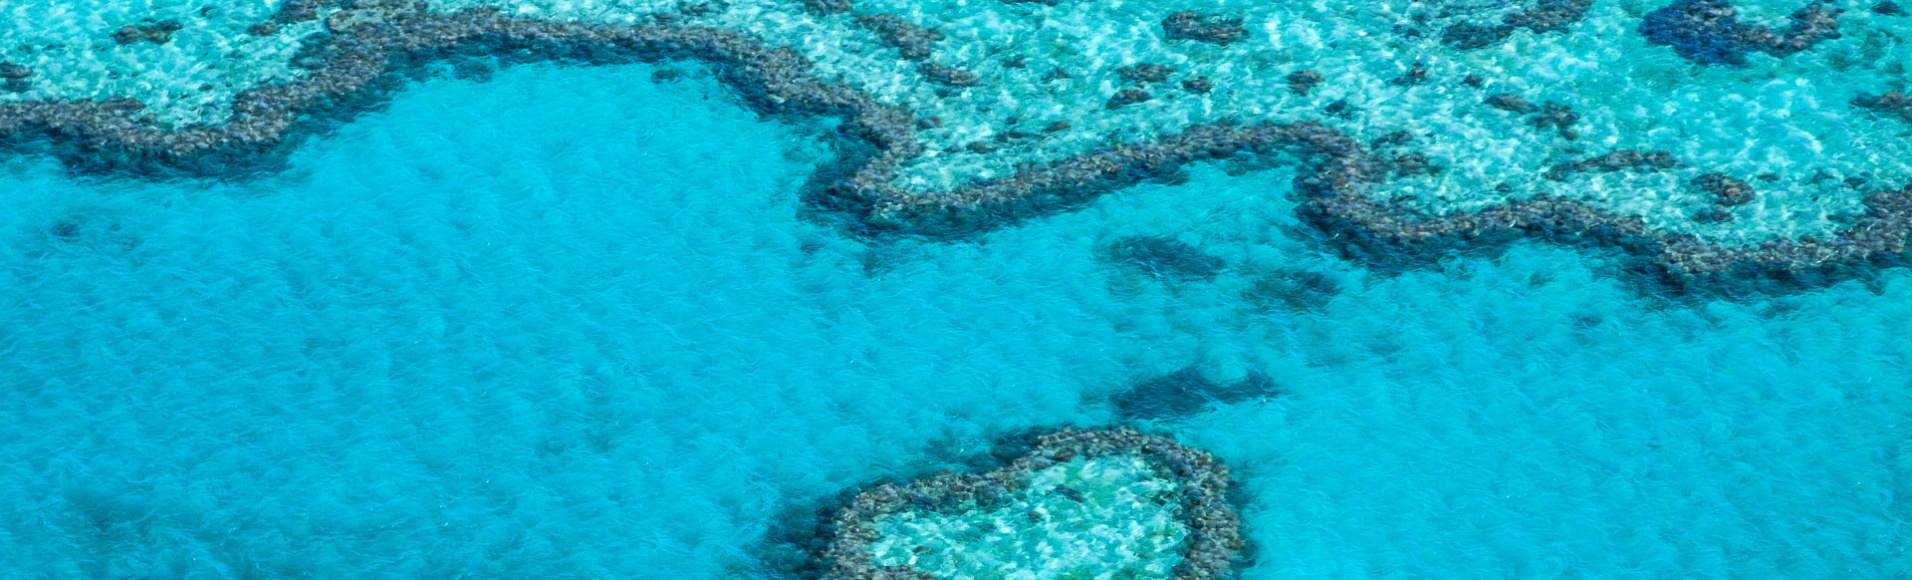 barriere-de-corail-australie